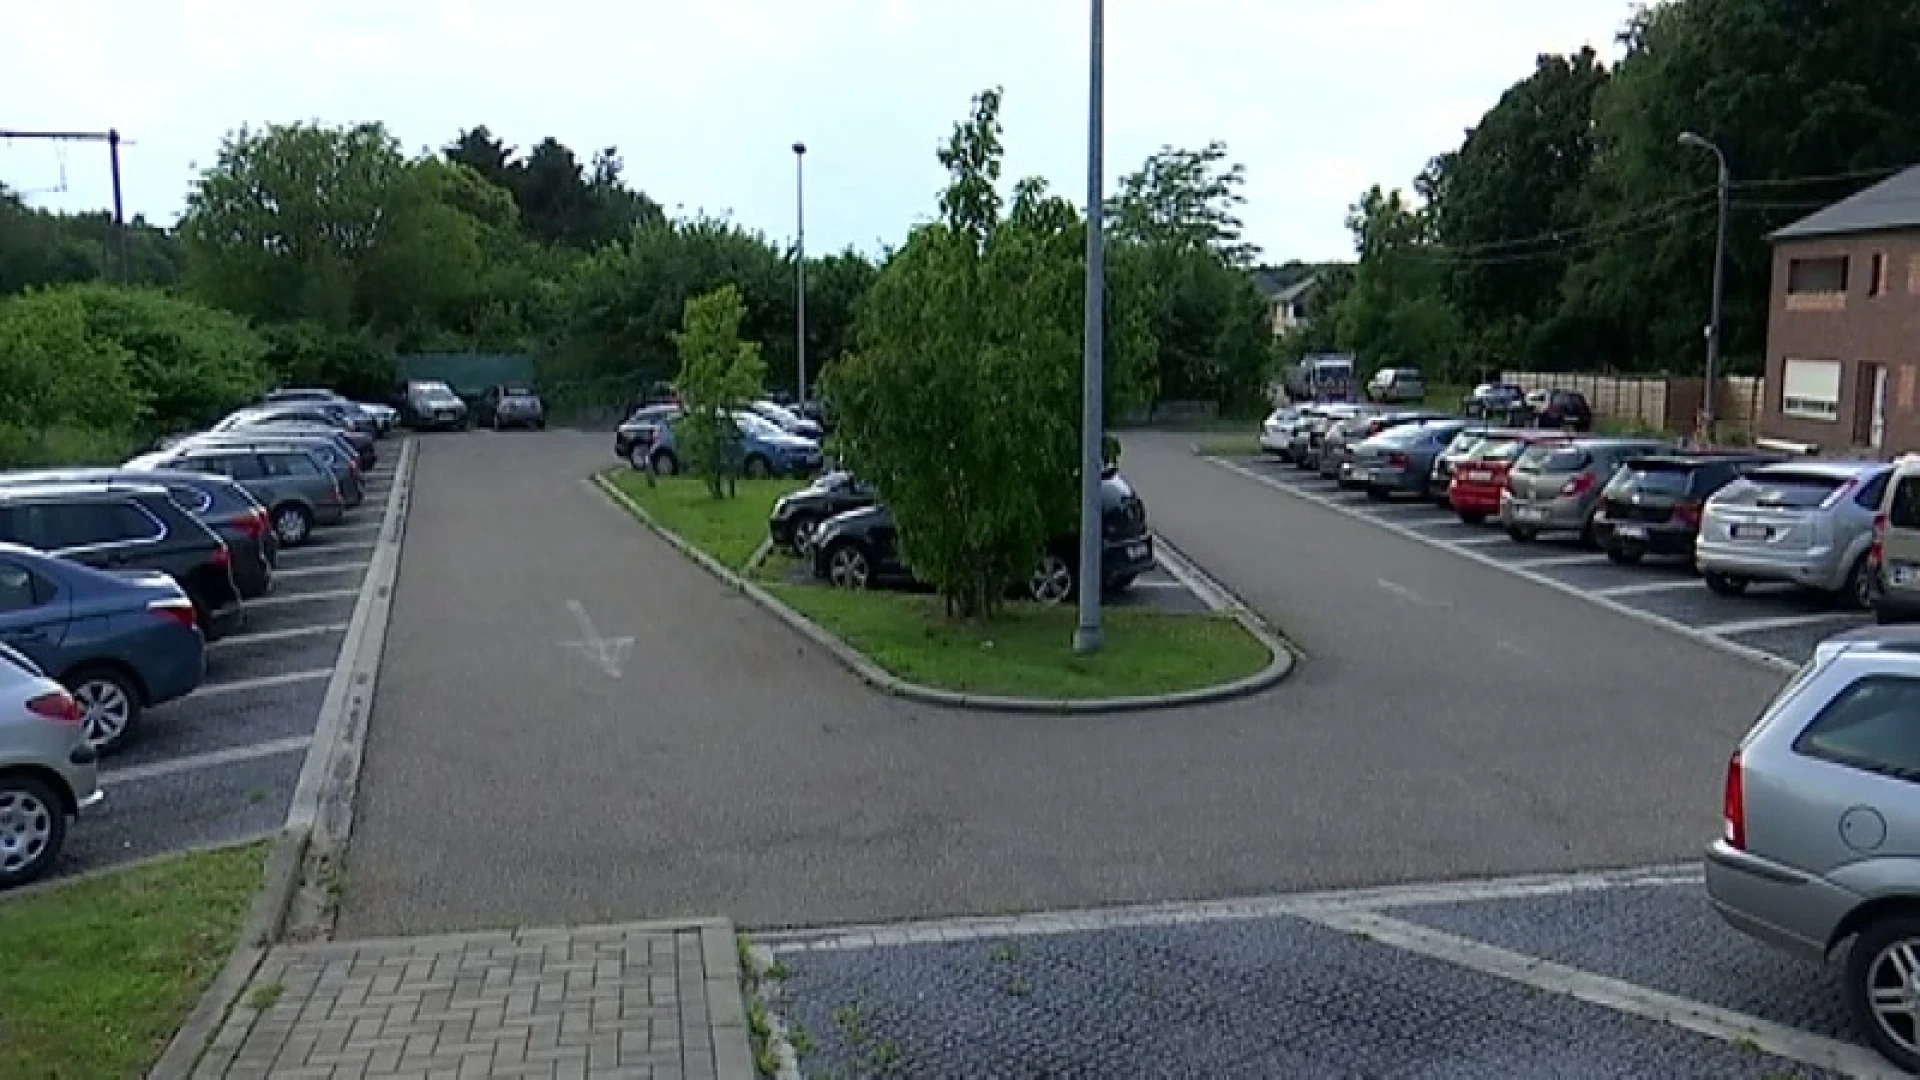 Worden kleinere stationsparkings dupe van betaalparkings Aarschot, Landen en Tienen?